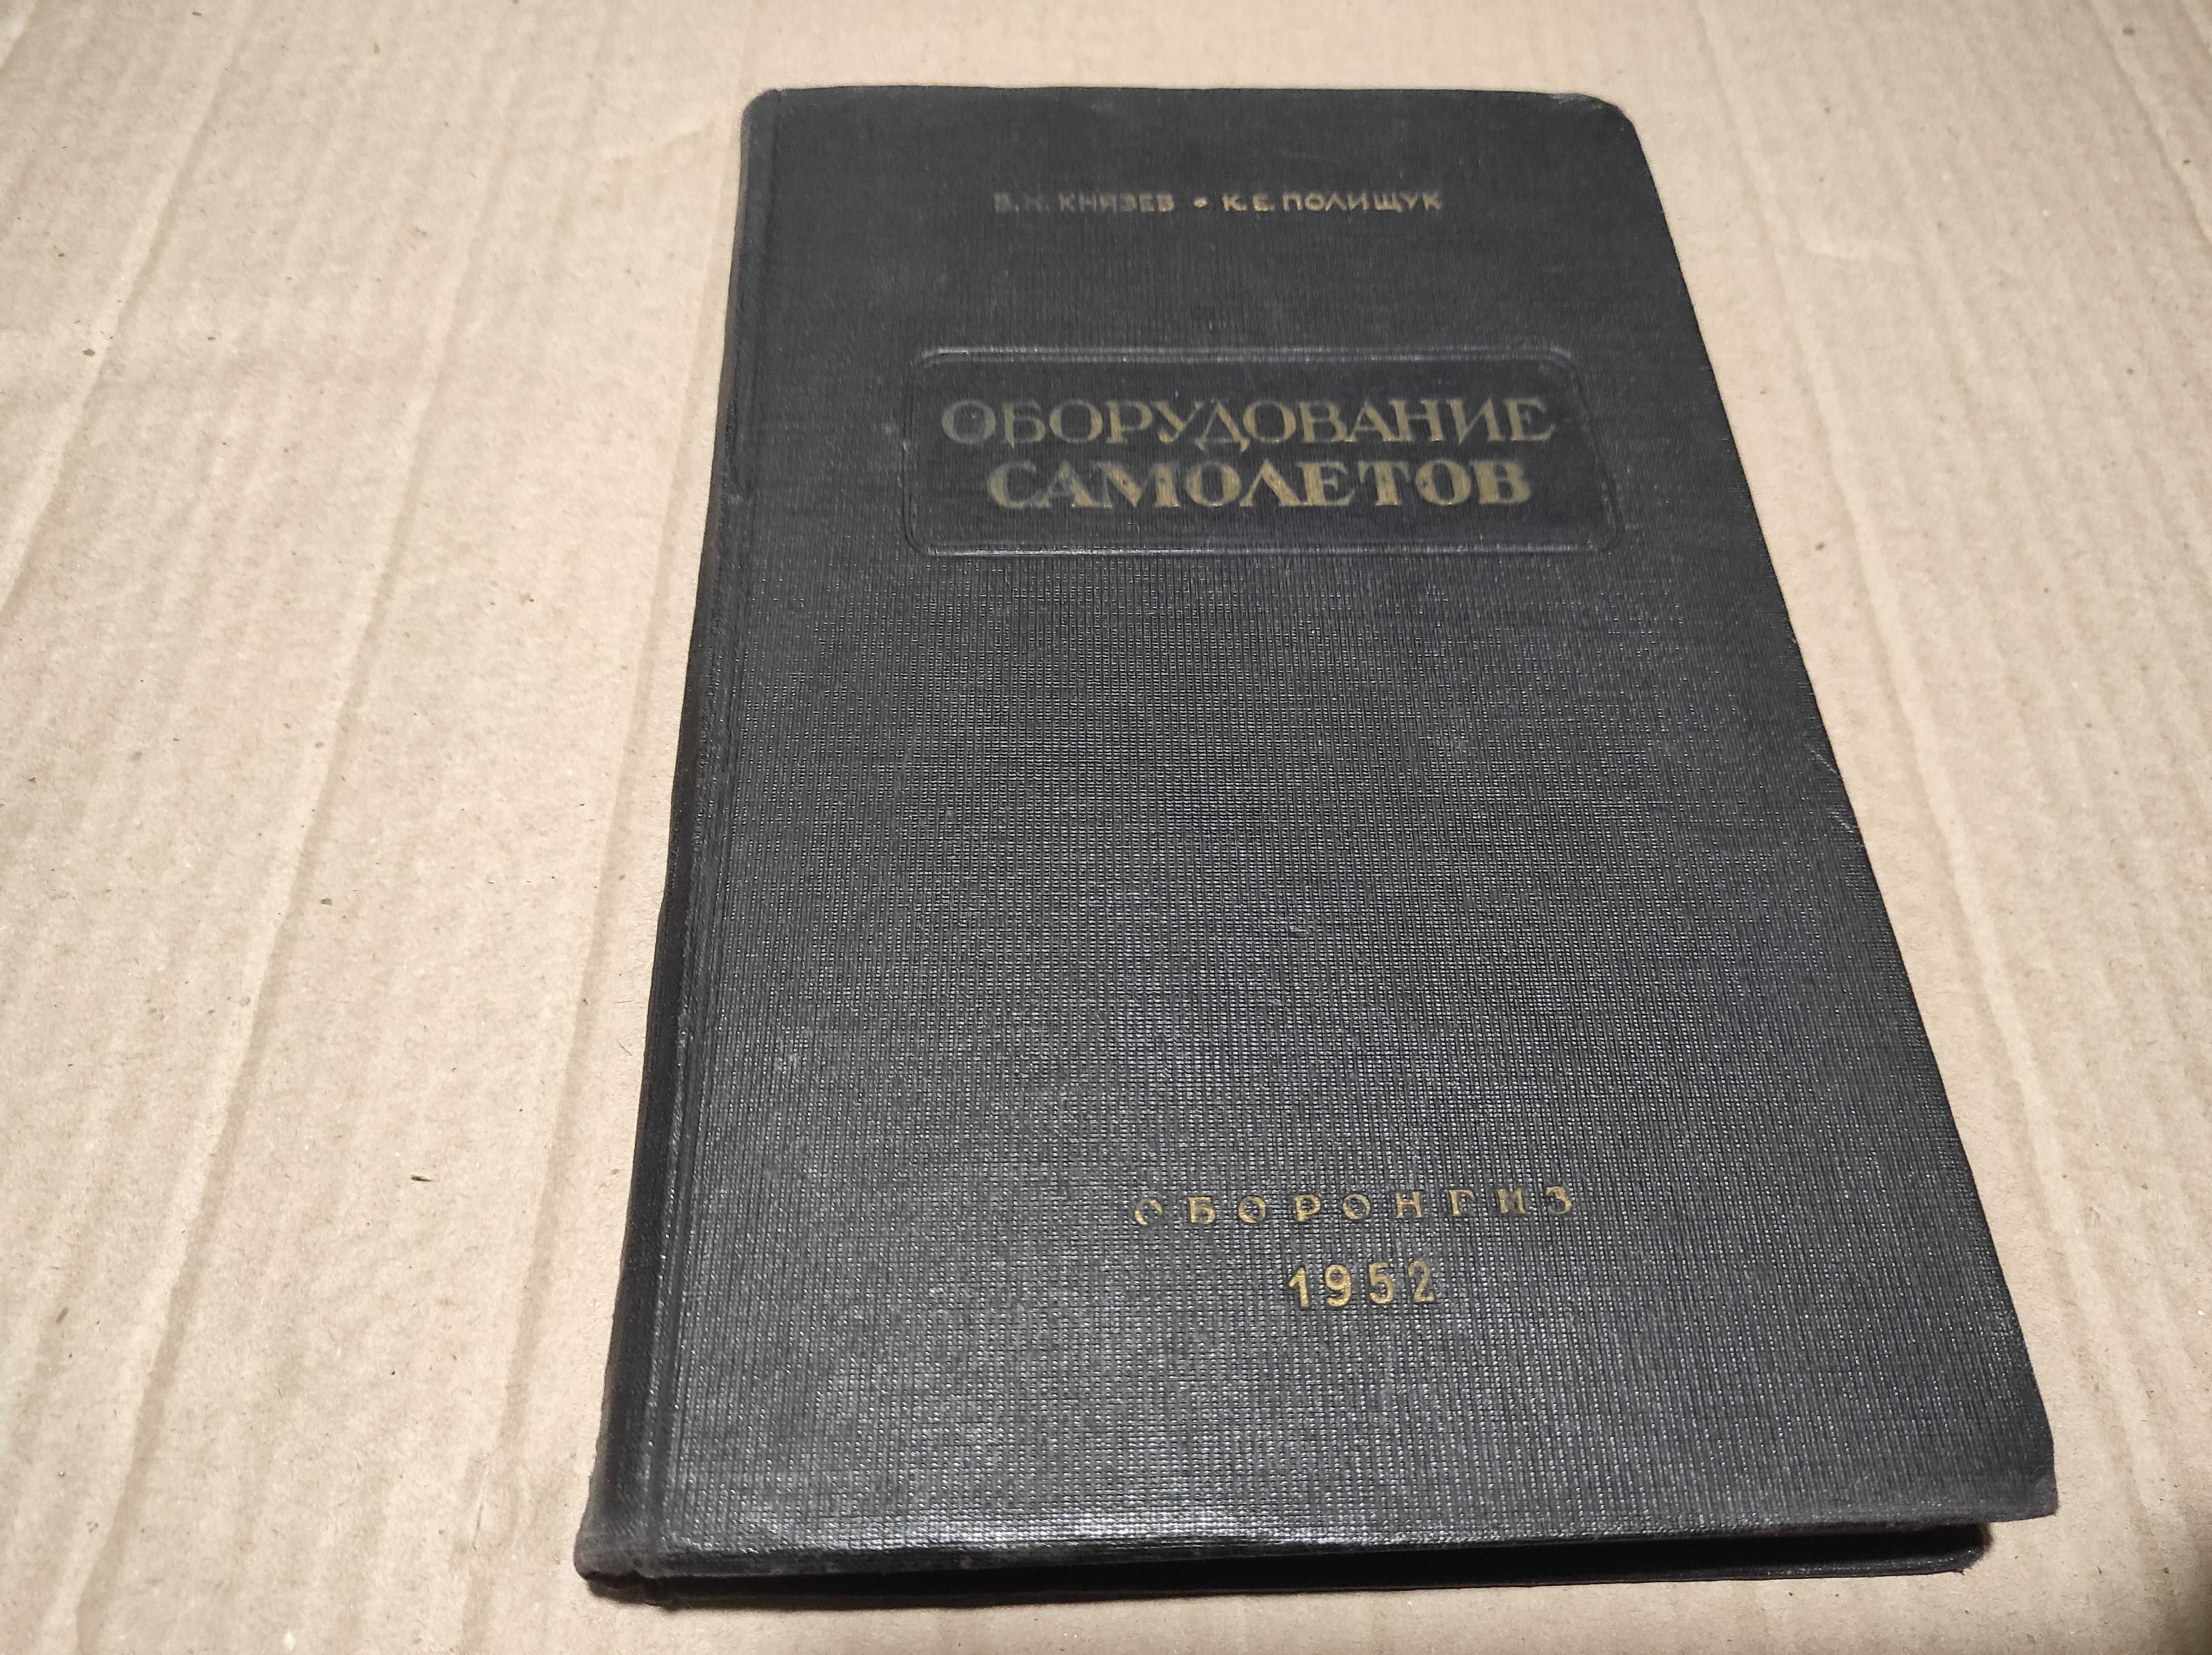 Книга "Оборудование самолетов" Князев, Полищук 1952 г.